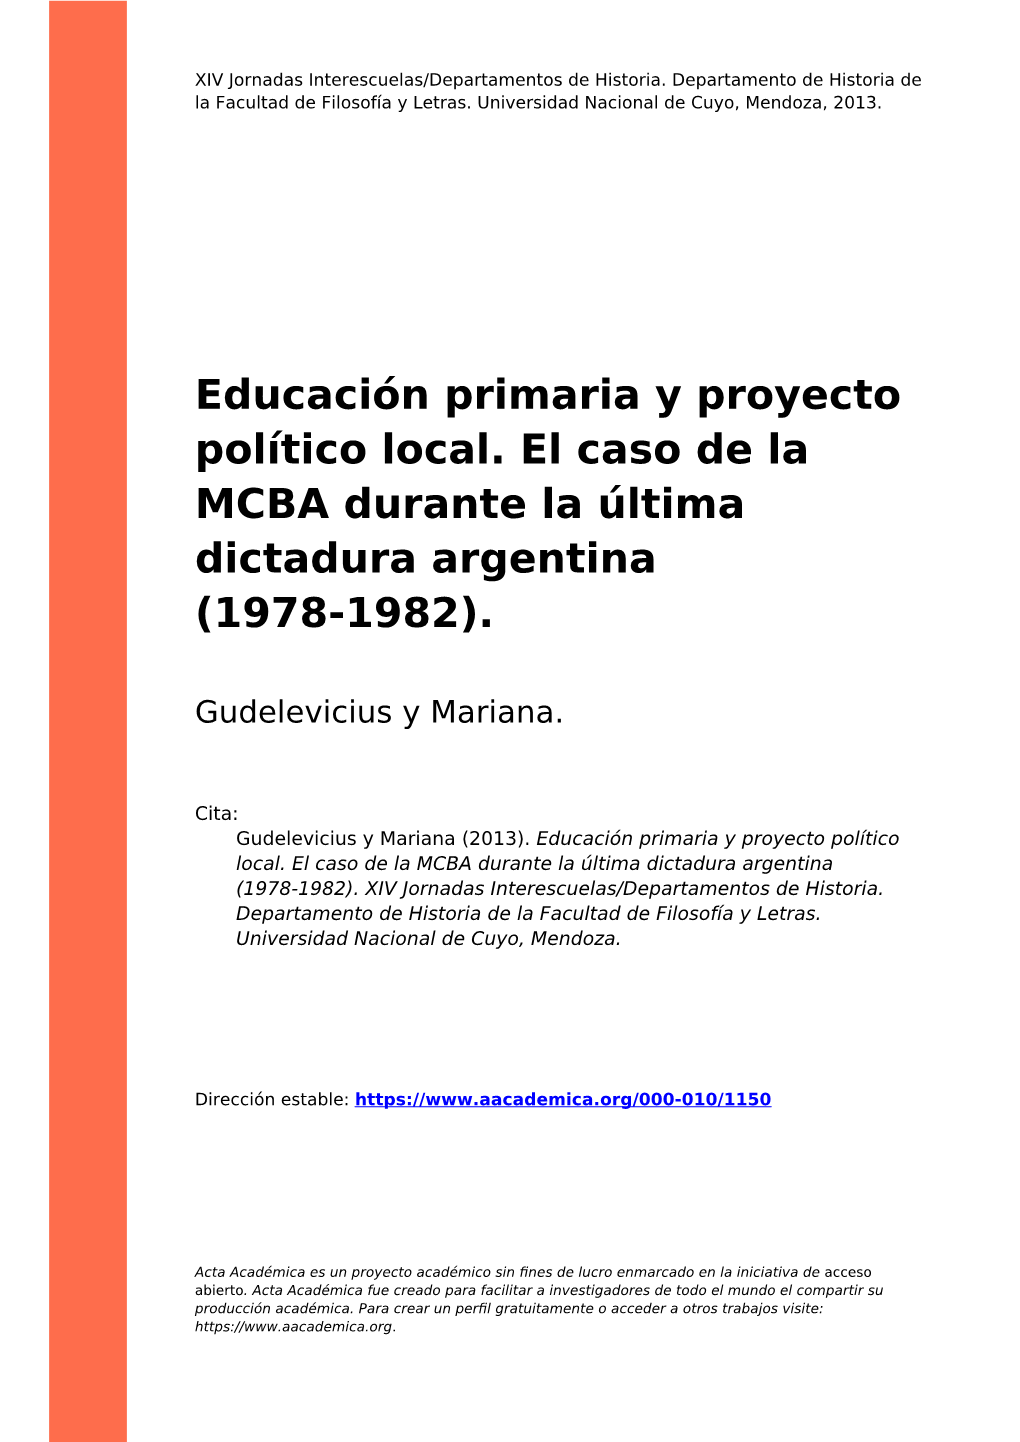 Educación Primaria Y Proyecto Político Local. El Caso De La MCBA Durante La Última Dictadura Argentina (1978-1982)